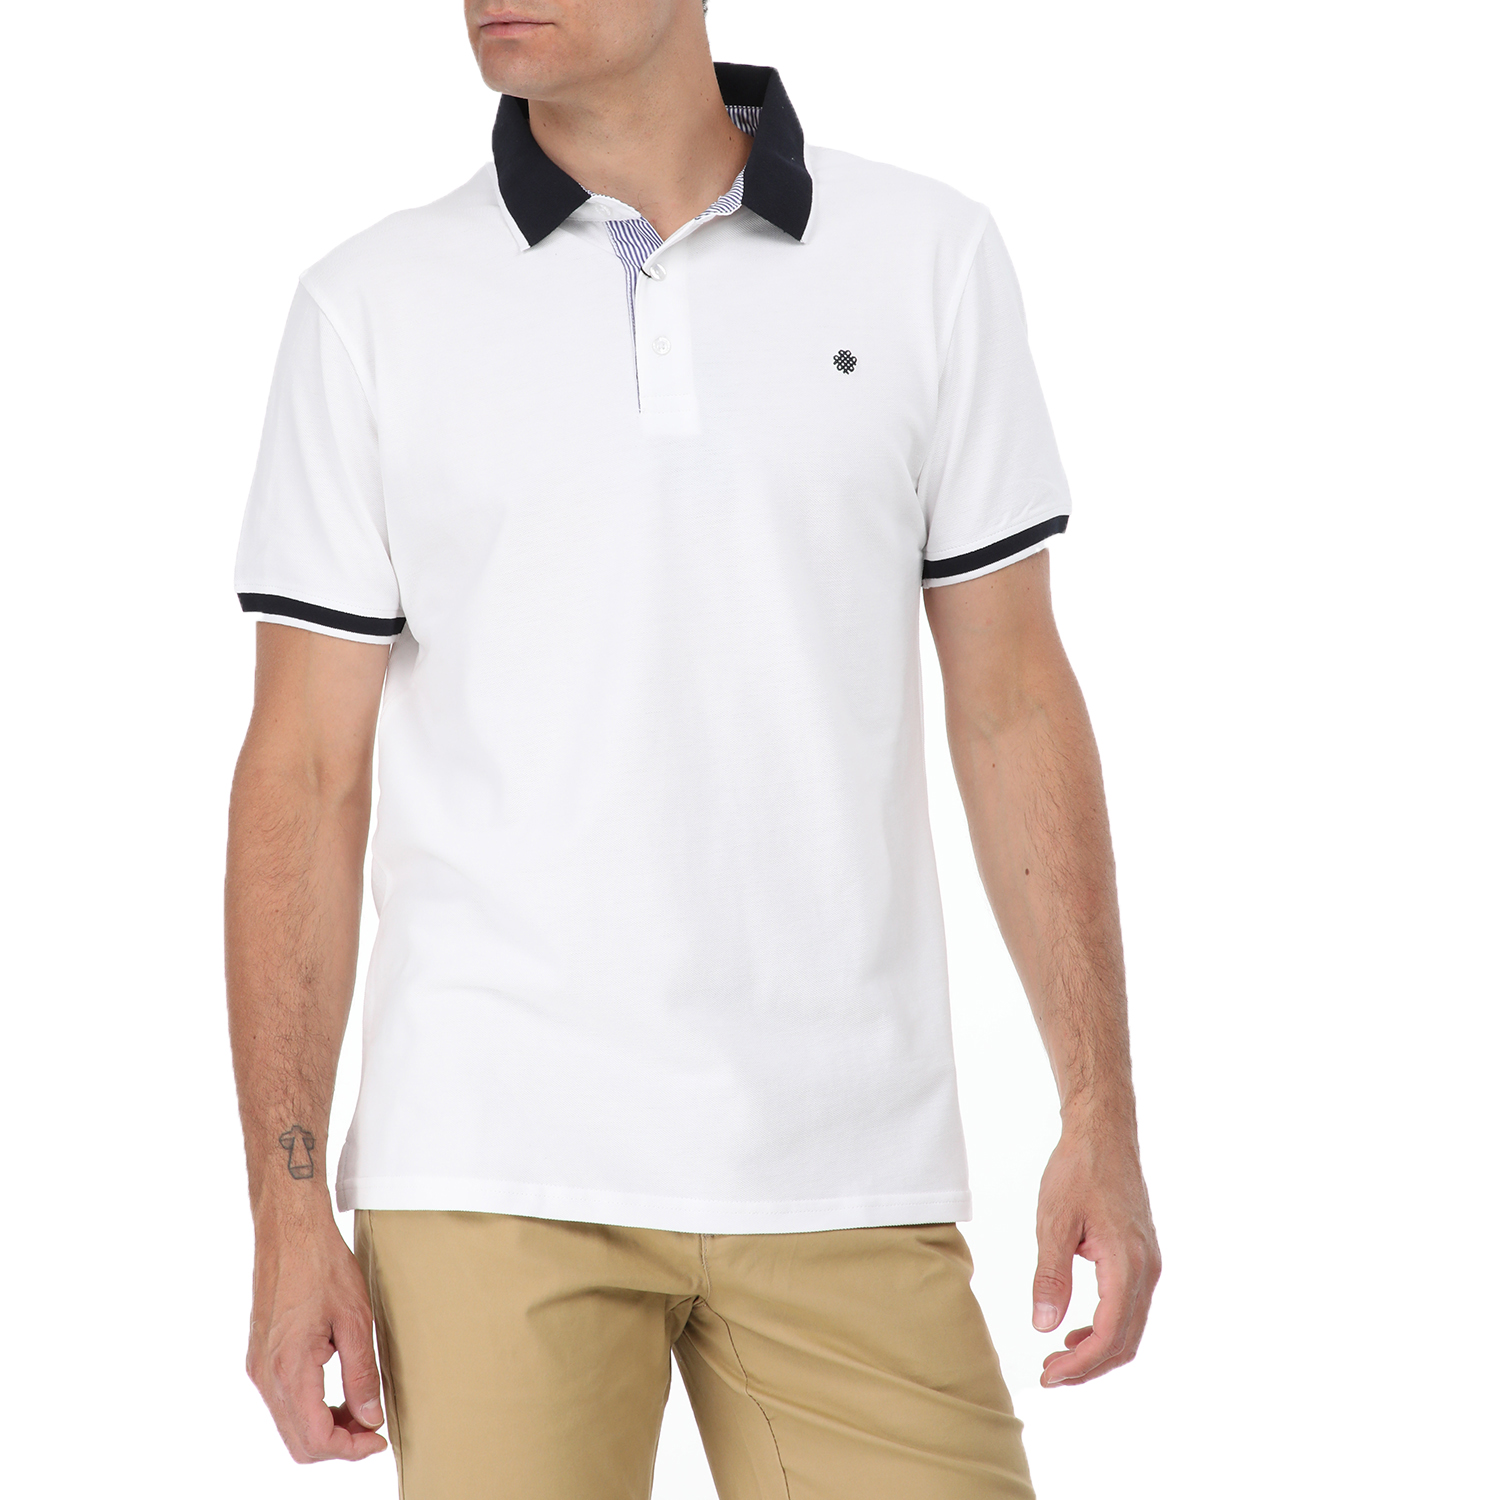 Ανδρικά/Ρούχα/Μπλούζες/Πόλο DORS - Ανδρική polo μπλούζα DORS λευκή